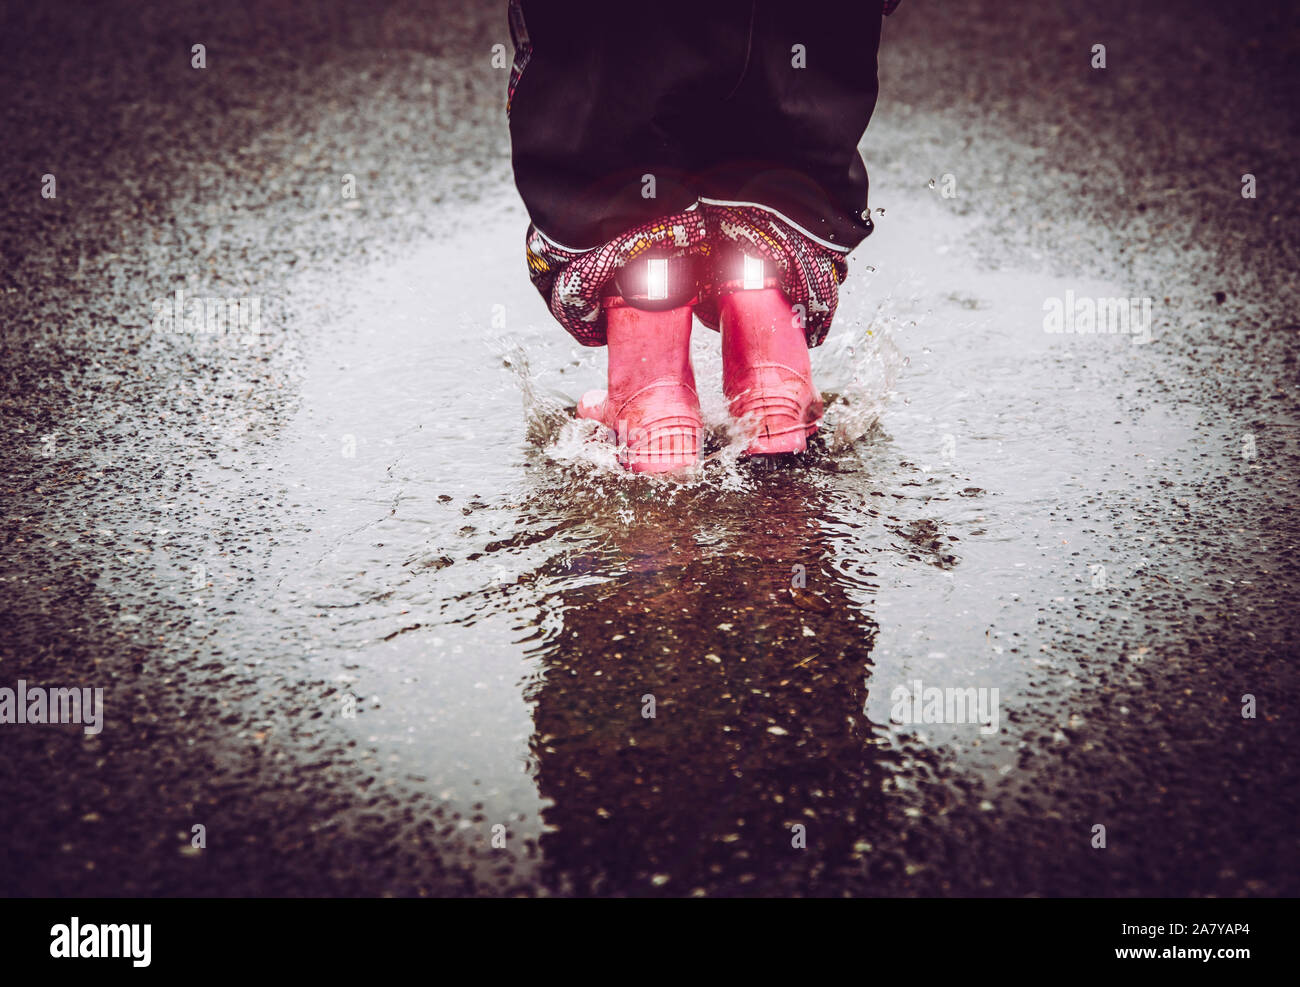 Mädchen Spaß, im Wasser Pfütze auf nasser Straße springen, das Tragen von regen Stiefel mit Reflektierende Details Stoff Streifen scheint. Hohe Sichtbarkeit und Sicherheit i Stockfoto